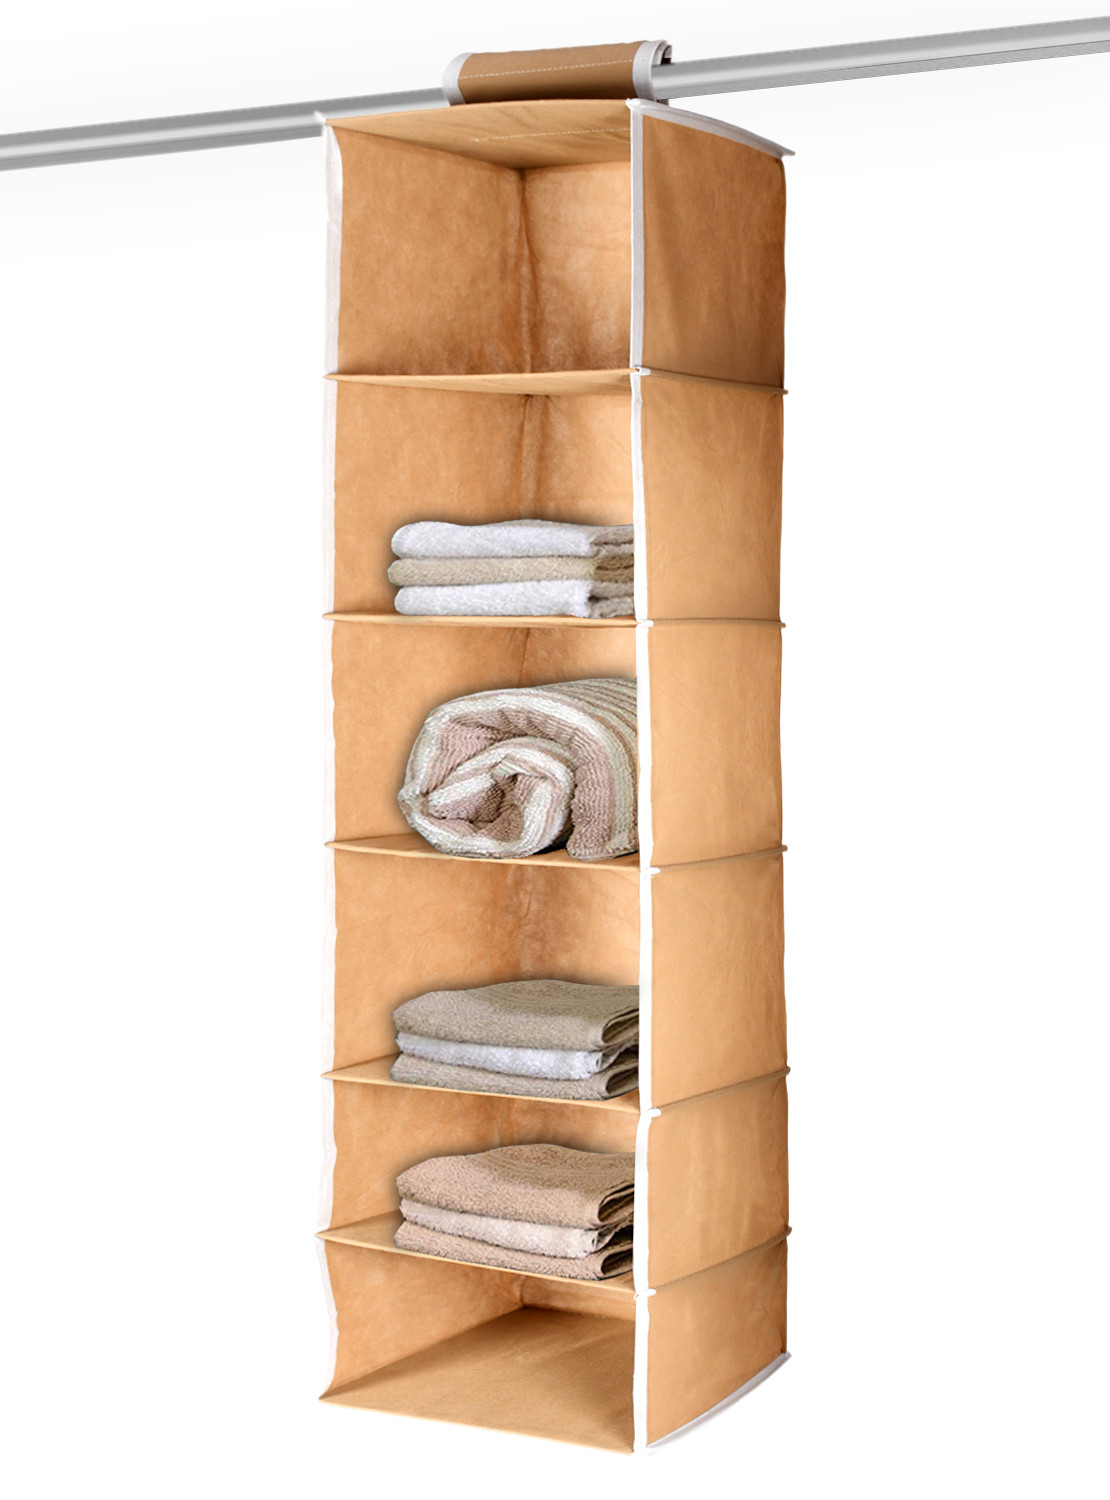 Kuber Industries 6 Shelf Closet Hanging Organizer/ Wardrobe Organizer For Clothes Storage (Brown)